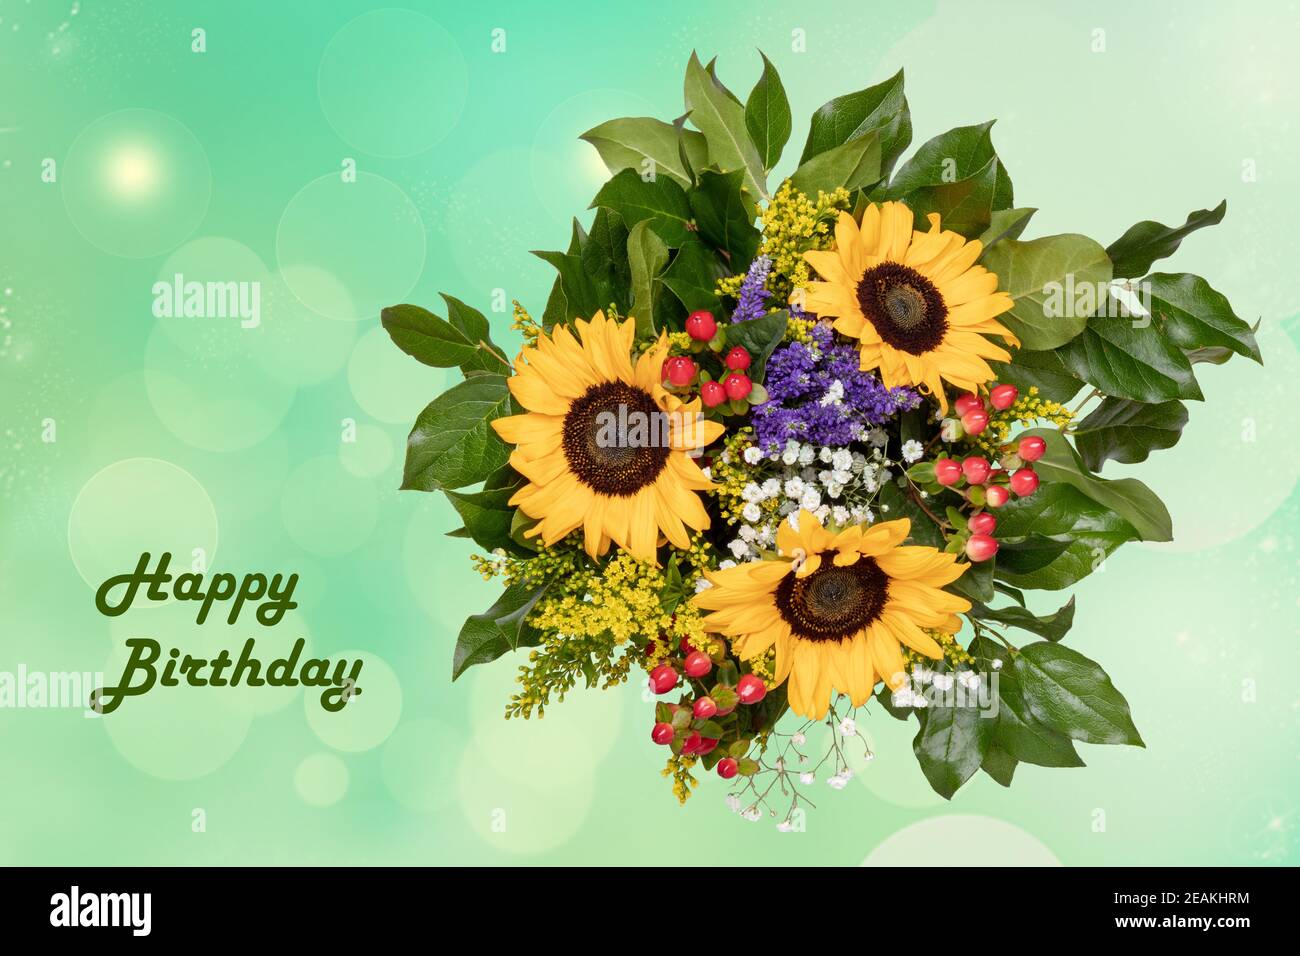 Felice disegno della scheda di compleanno con un bouquet fiorito splendido di girasoli su uno sfondo chiaro astratto delicato pastello verde sfocato. Foto Stock